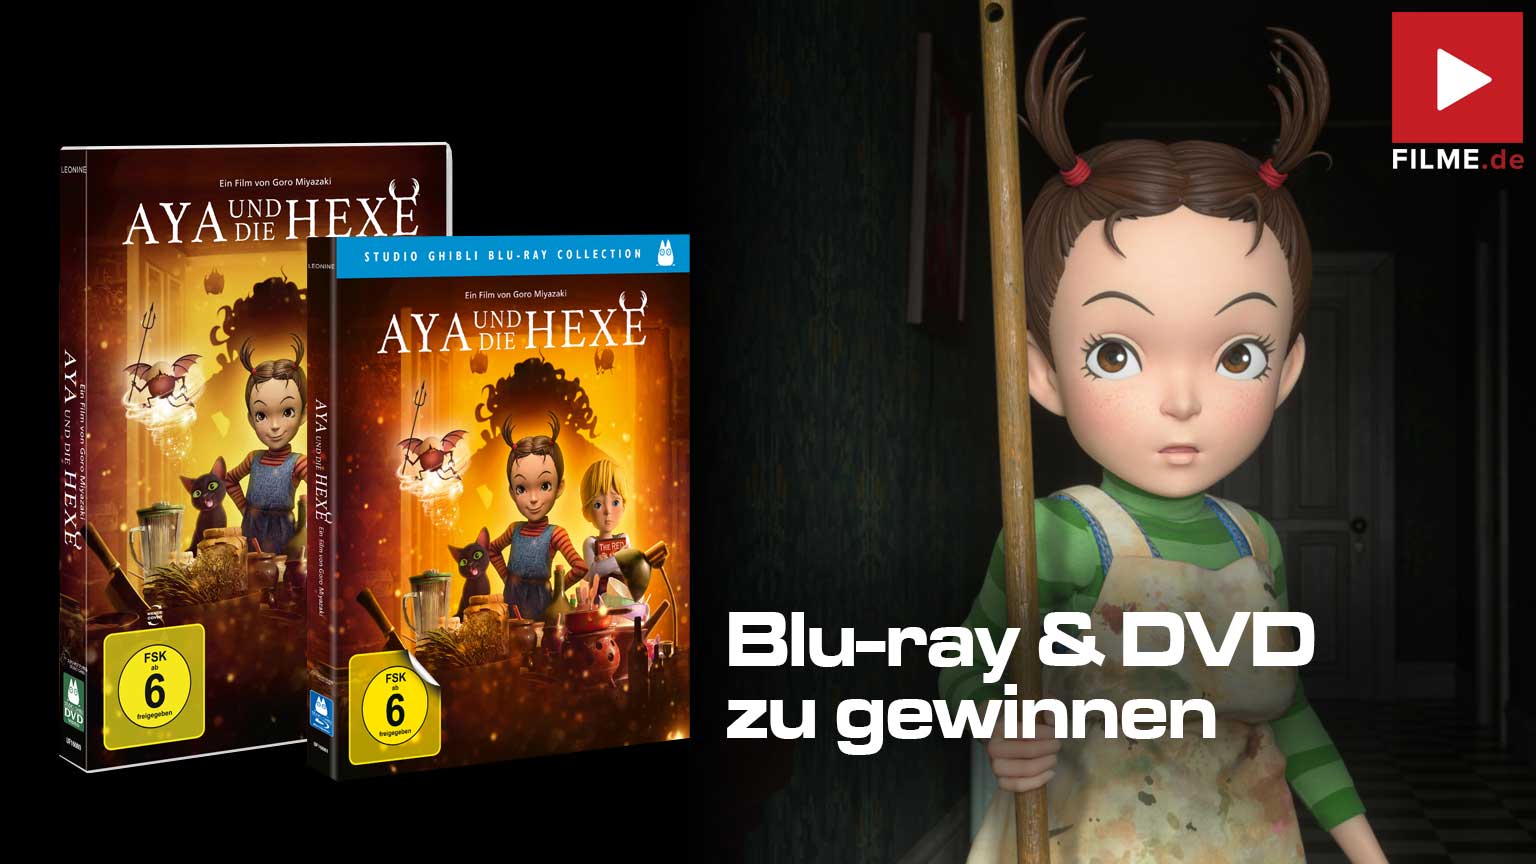 Aya und die Hexe Film 2021 Blu-ray DVD Gewinnspiel gewinnen Artikelbild